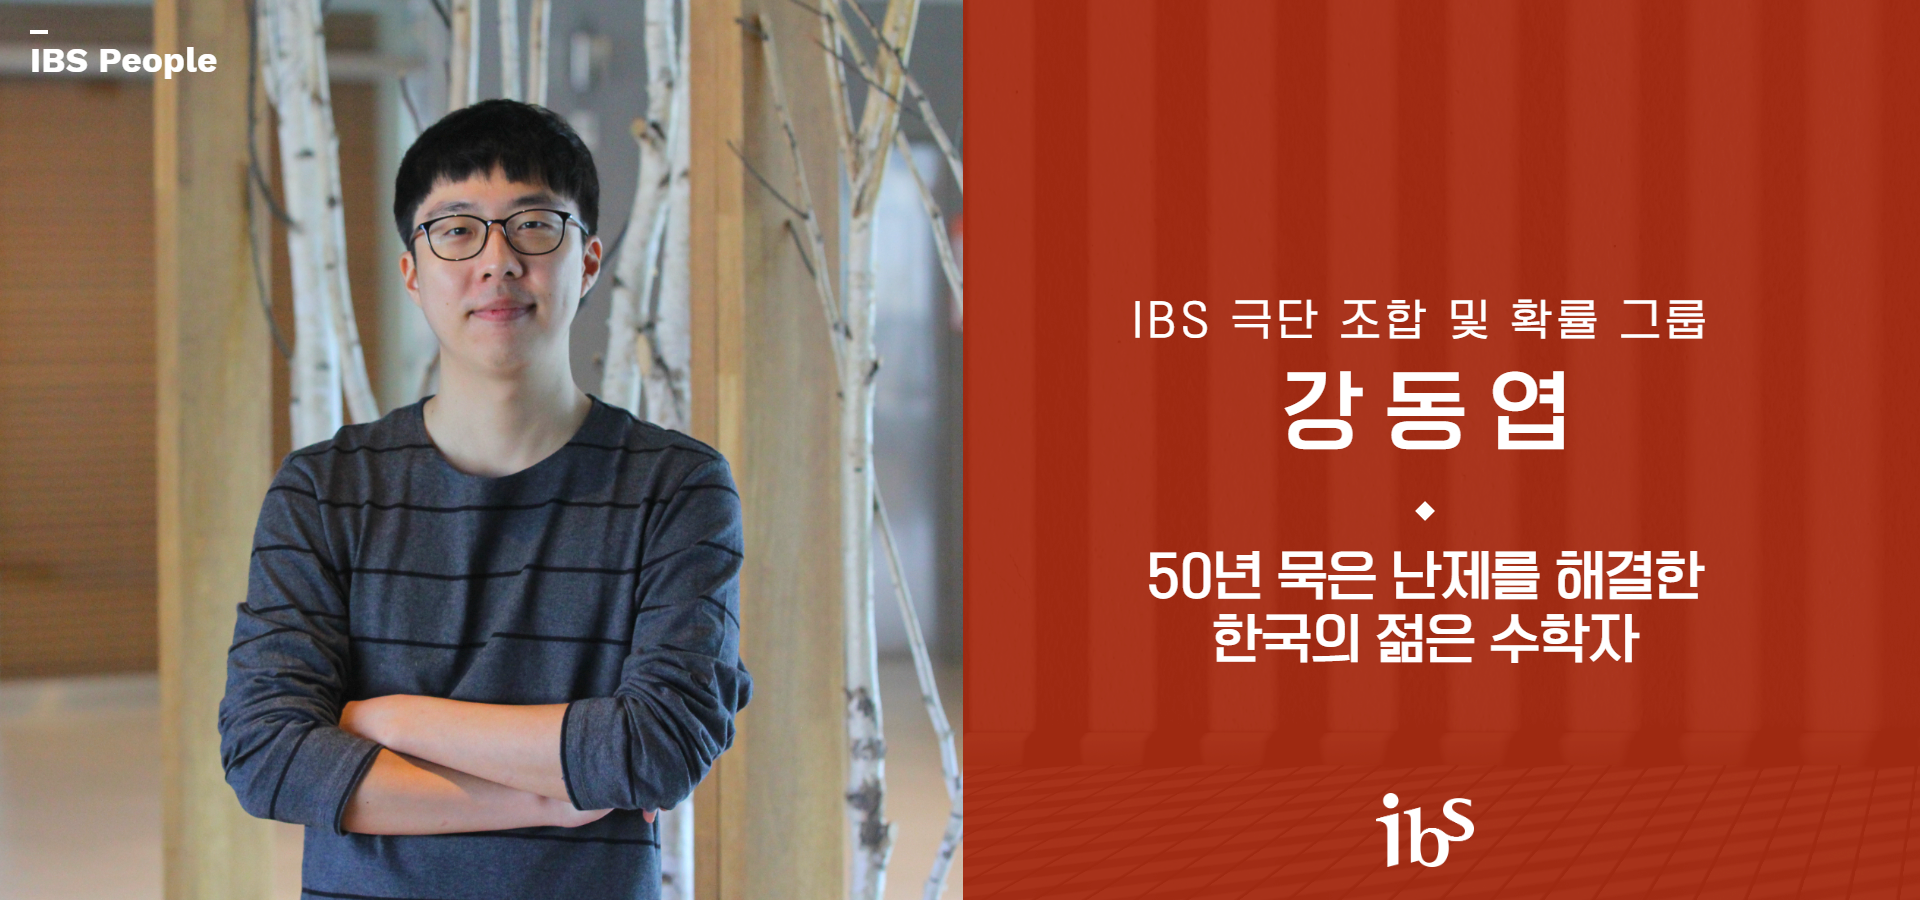 IBS 극단 조합 및 확률 그룹 강동엽 50년 묵은 난제를 해결한 한국의 젊은 수학자